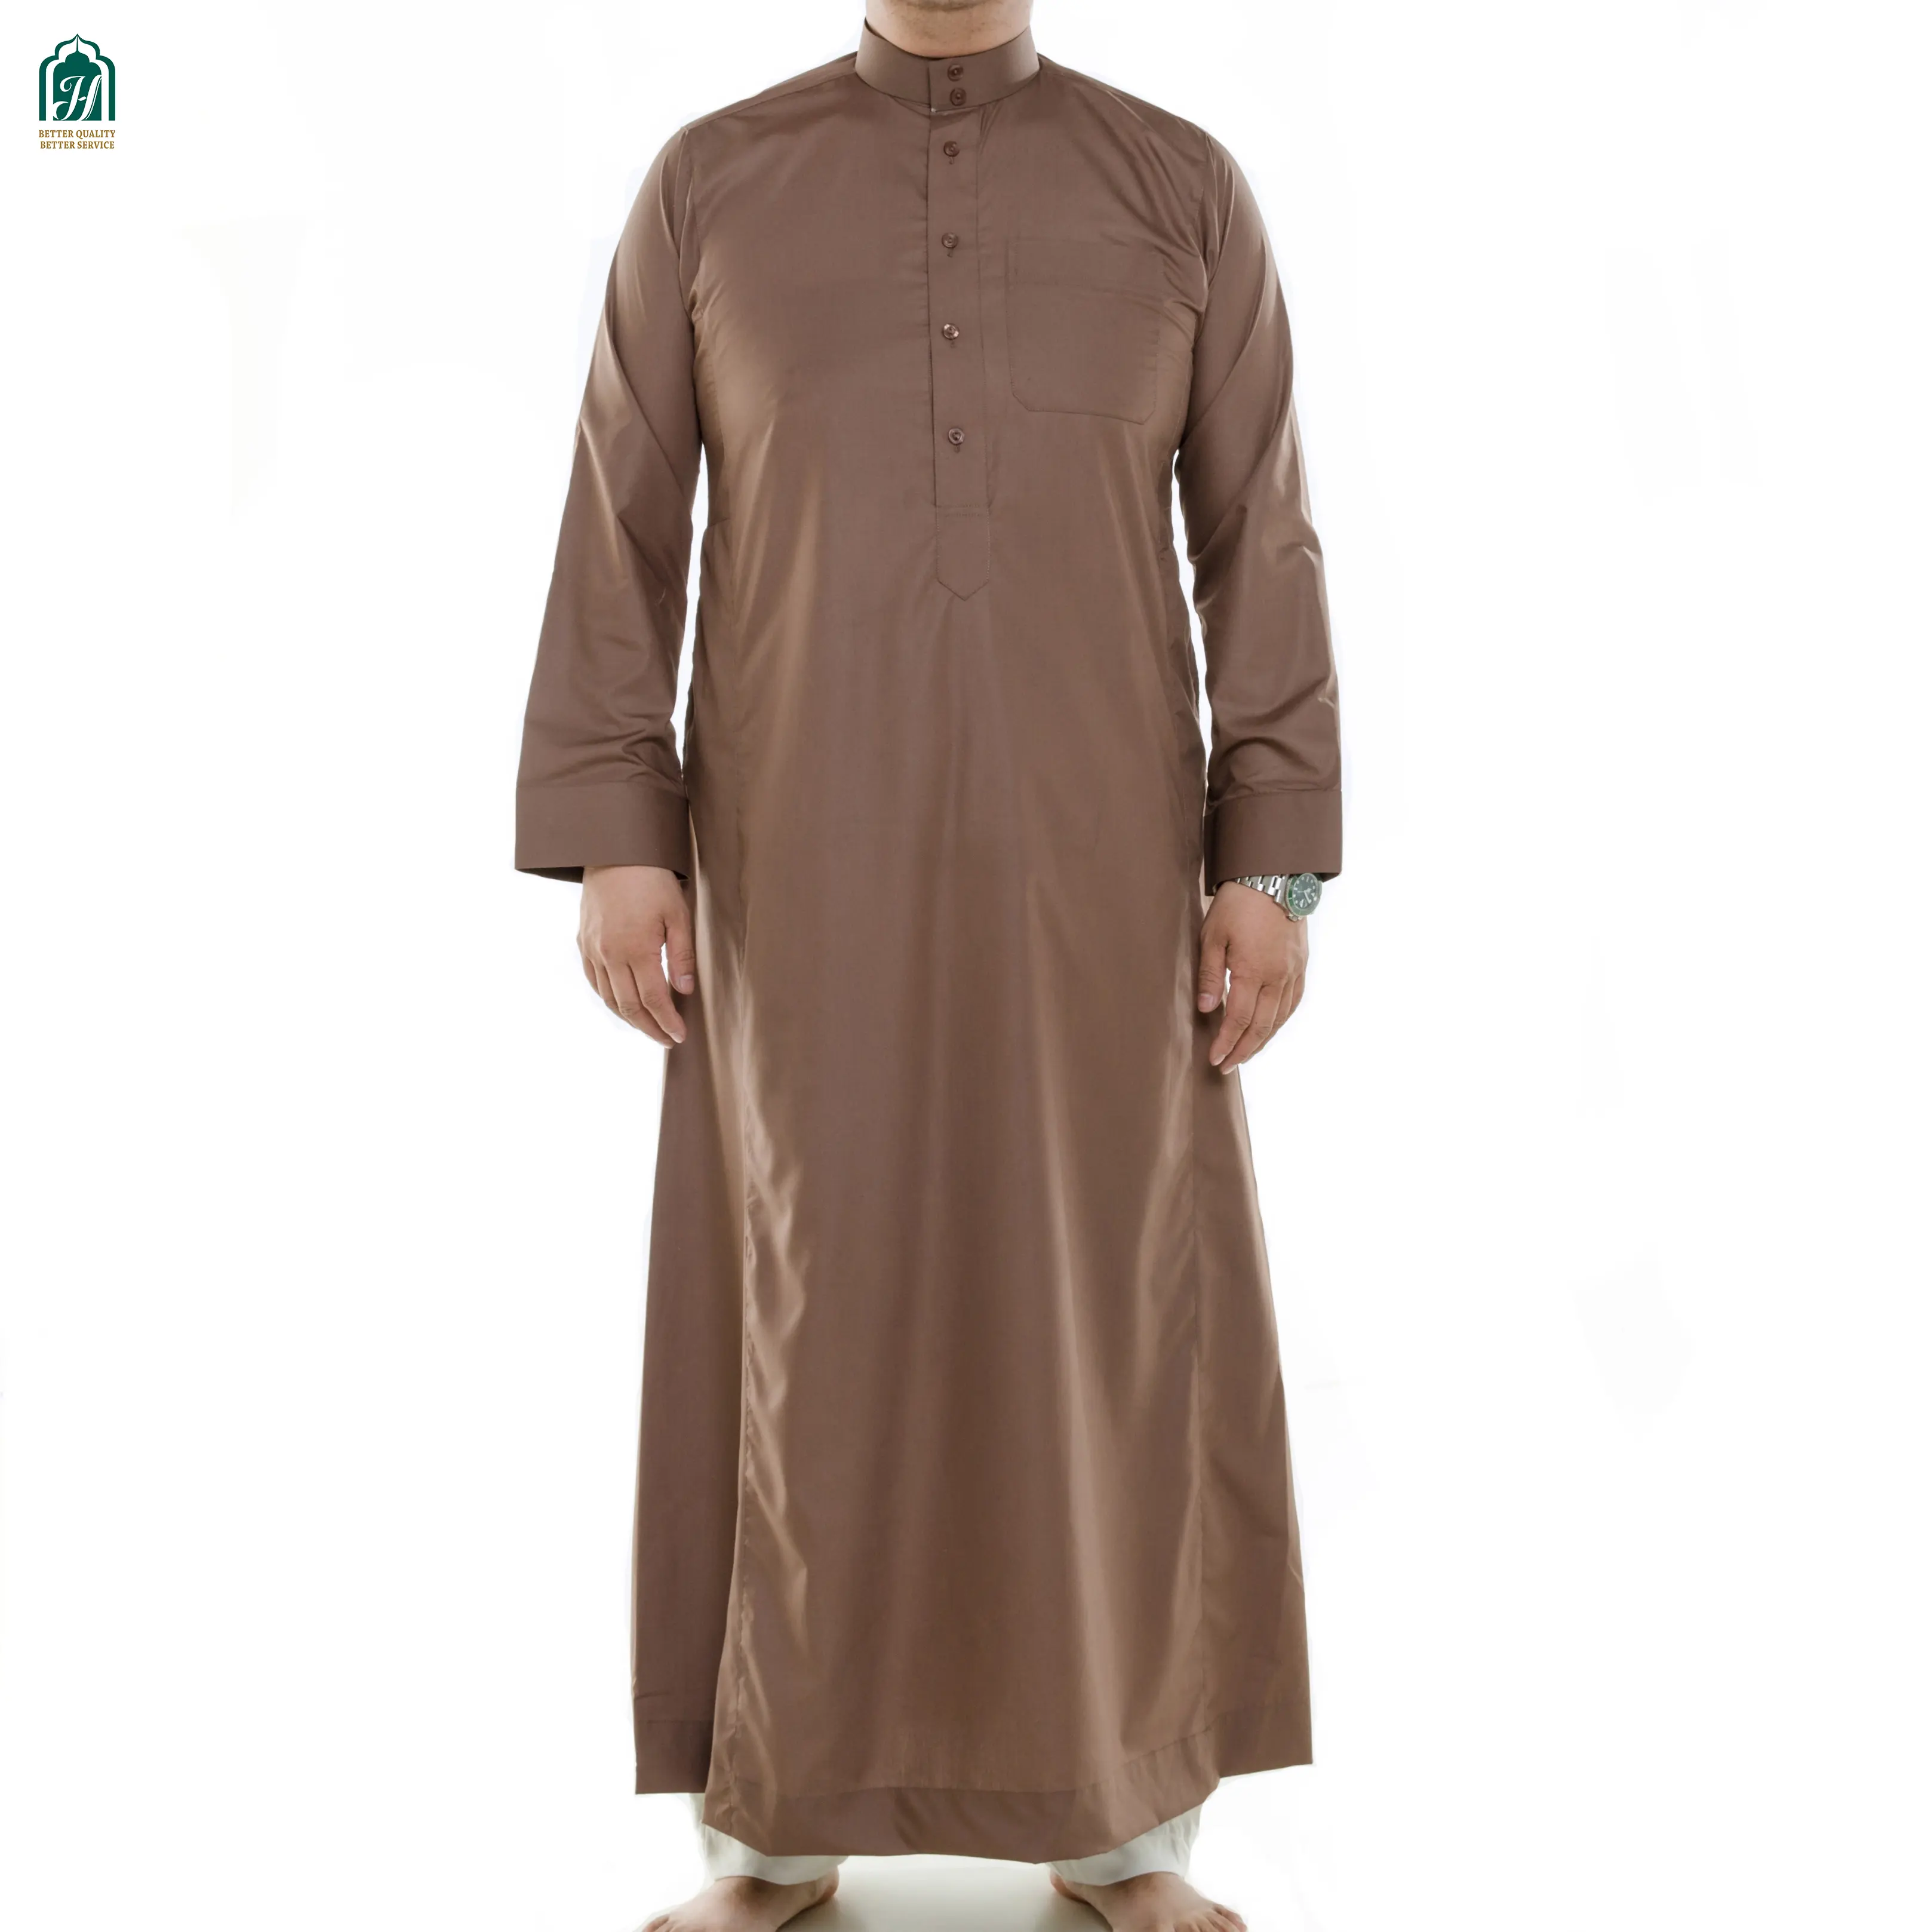 Кафтан для мужчин, мусульманский Тауб, мусульманская Арабская одежда, рубашка с длинным рукавом, топ, халат, традиционные костюмы Саудовской Аравии, мужские мусульманские платья